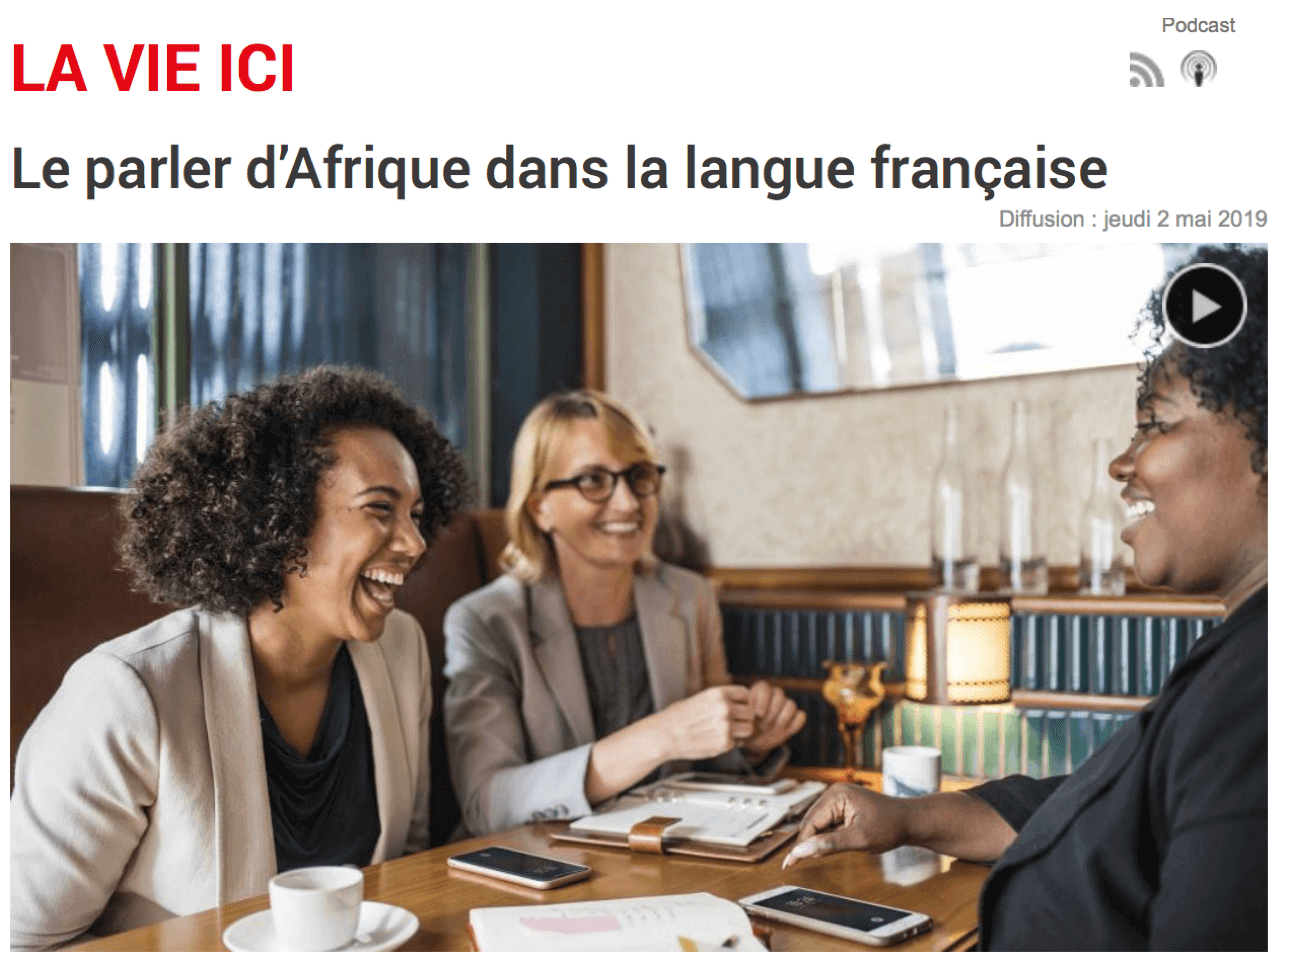 Le parler d’Afrique dans la langue française